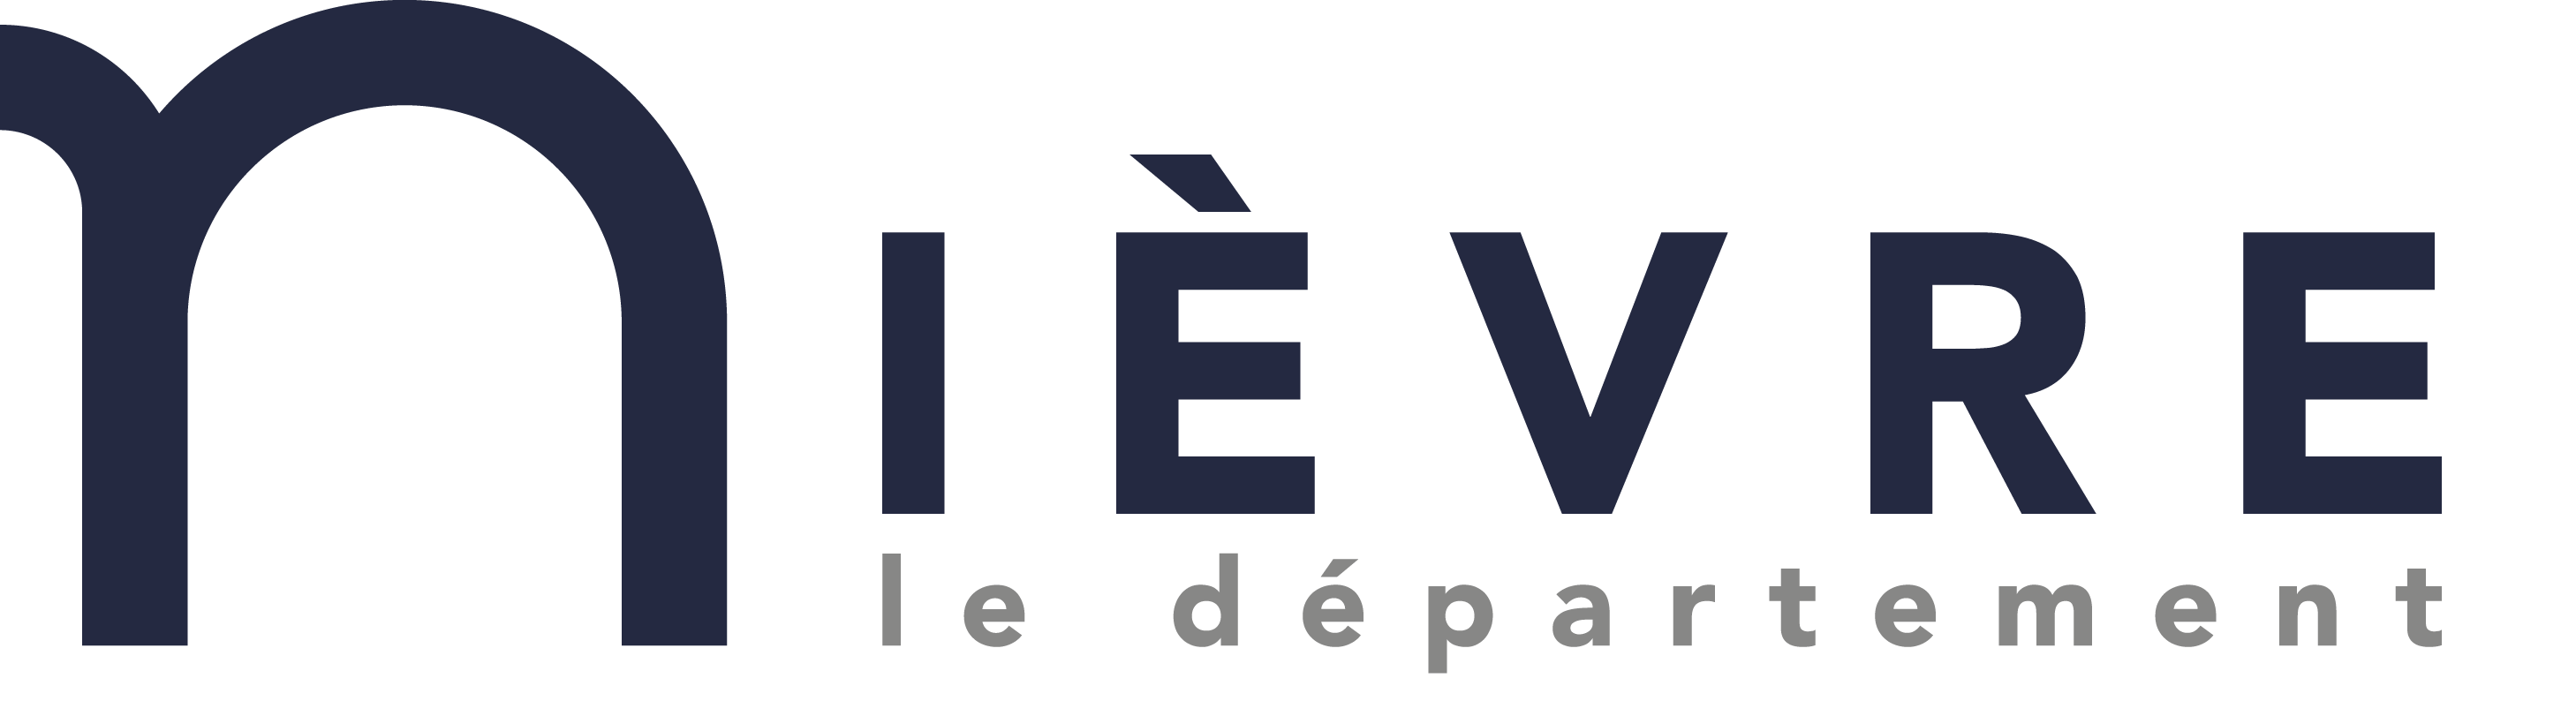 logo département de la Nièvre